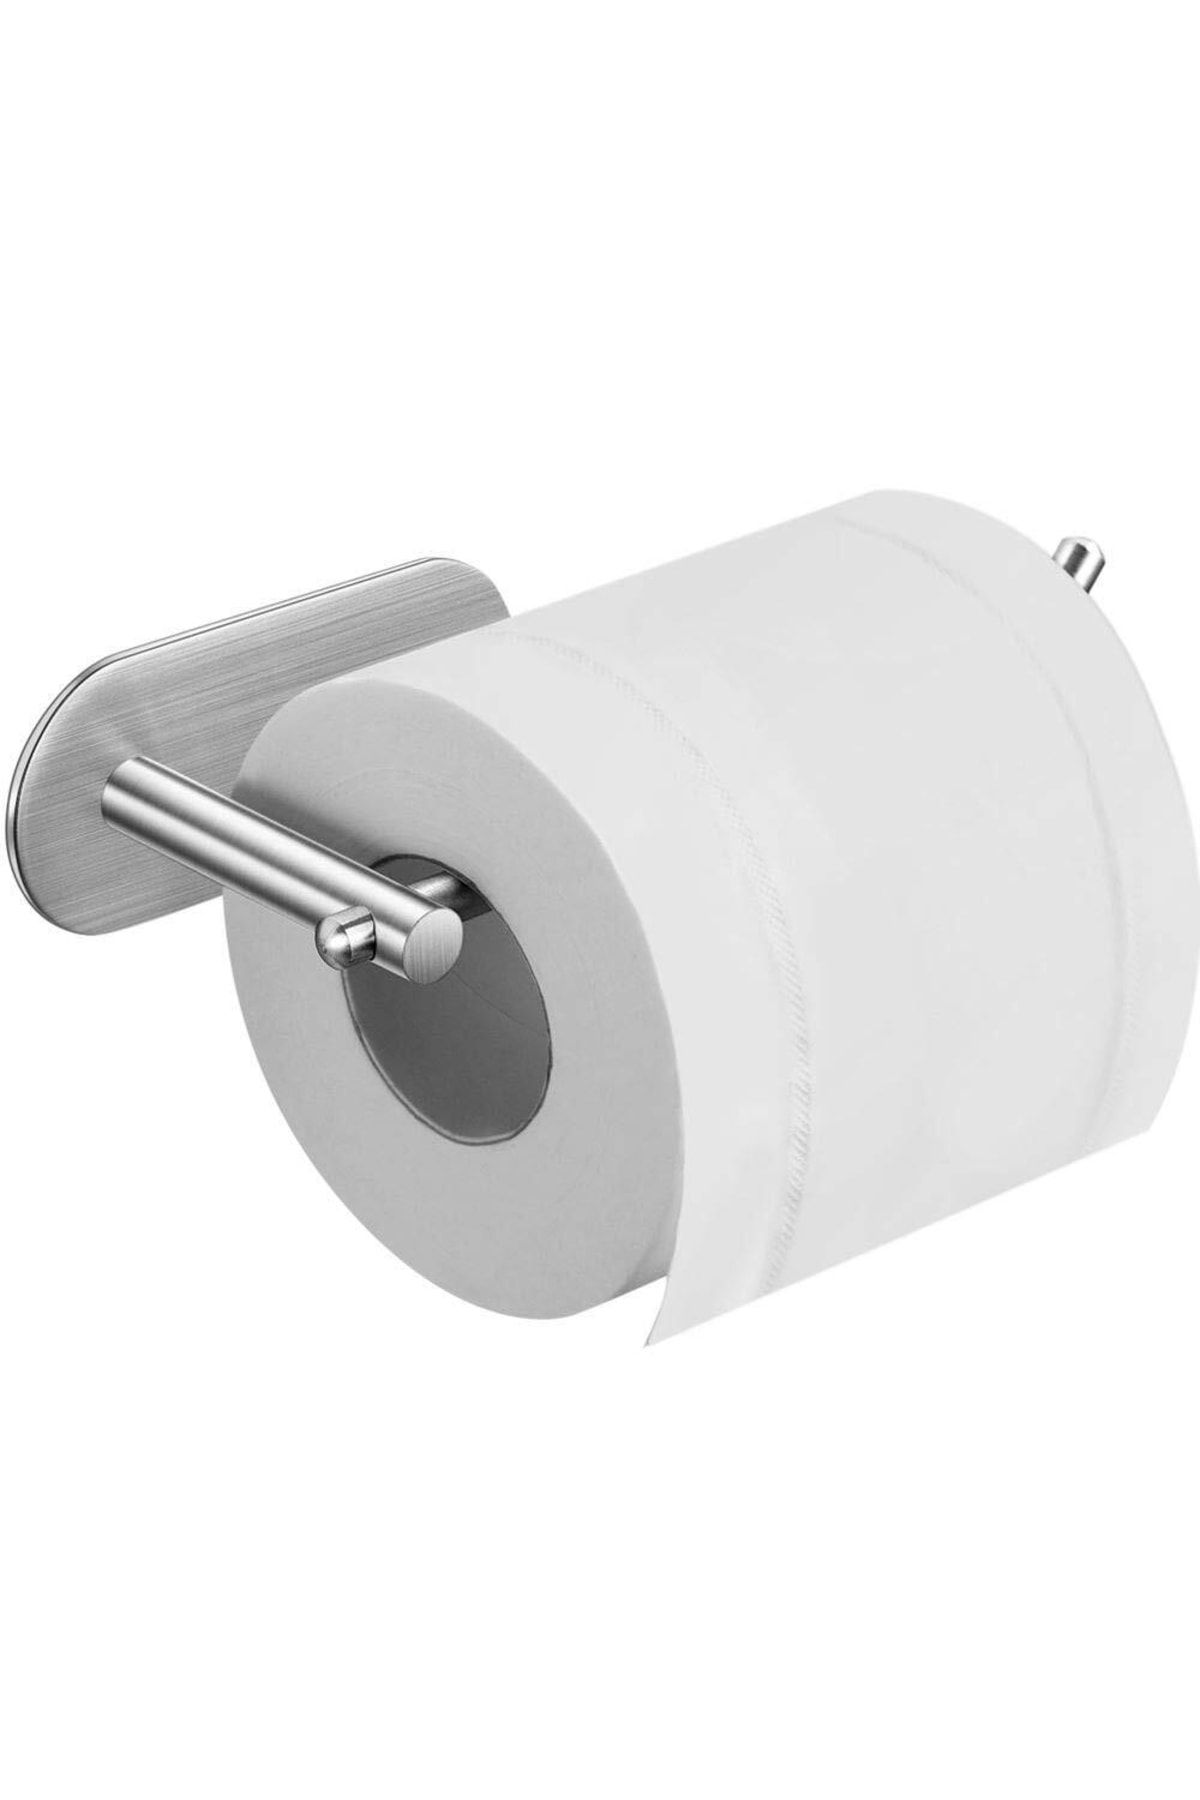 DELTAHOME Paslanmaz Çelik Tuvalet Kağıtlığı Inox Kendinden Yapışkanlı Bant Sistem